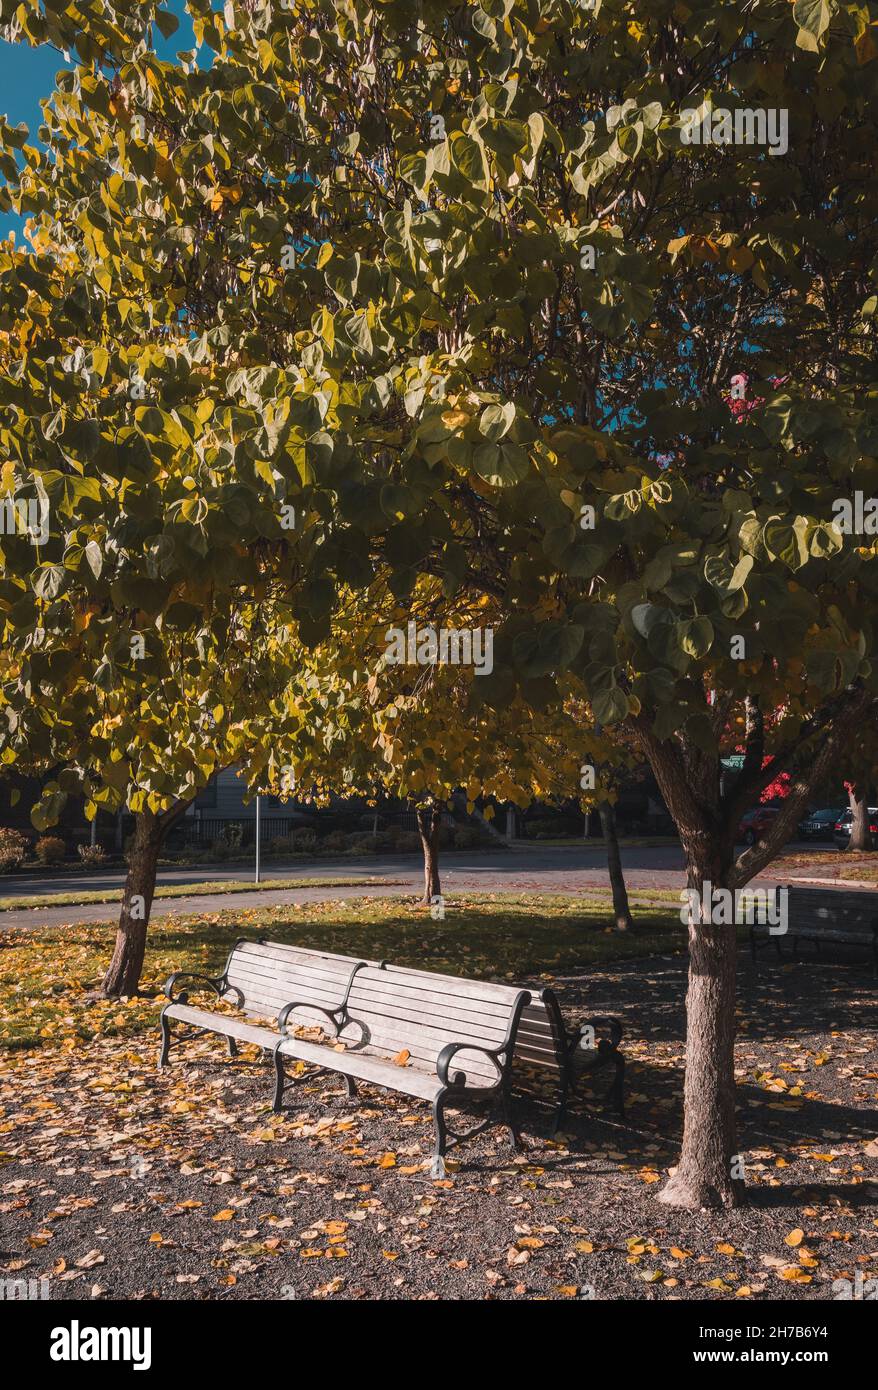 Leere Bank im Herbstpark. Laubbäume mit bunten grünen, gelben, orangefarbenen, goldenen Blättern Stockfoto